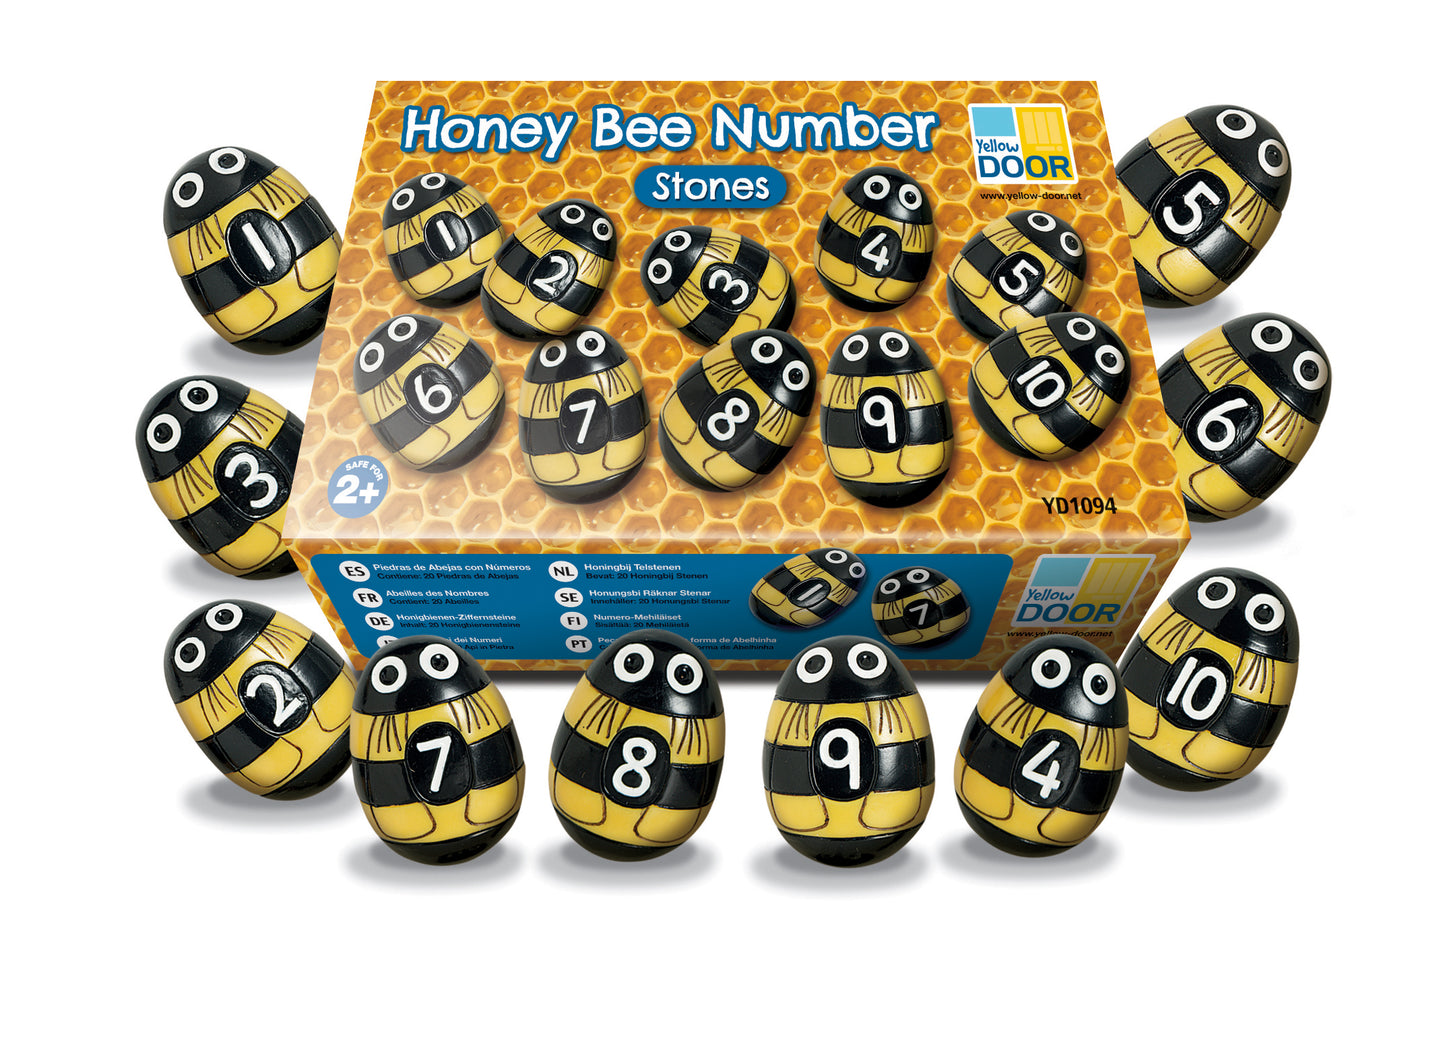 Honey bee number stones - SALE